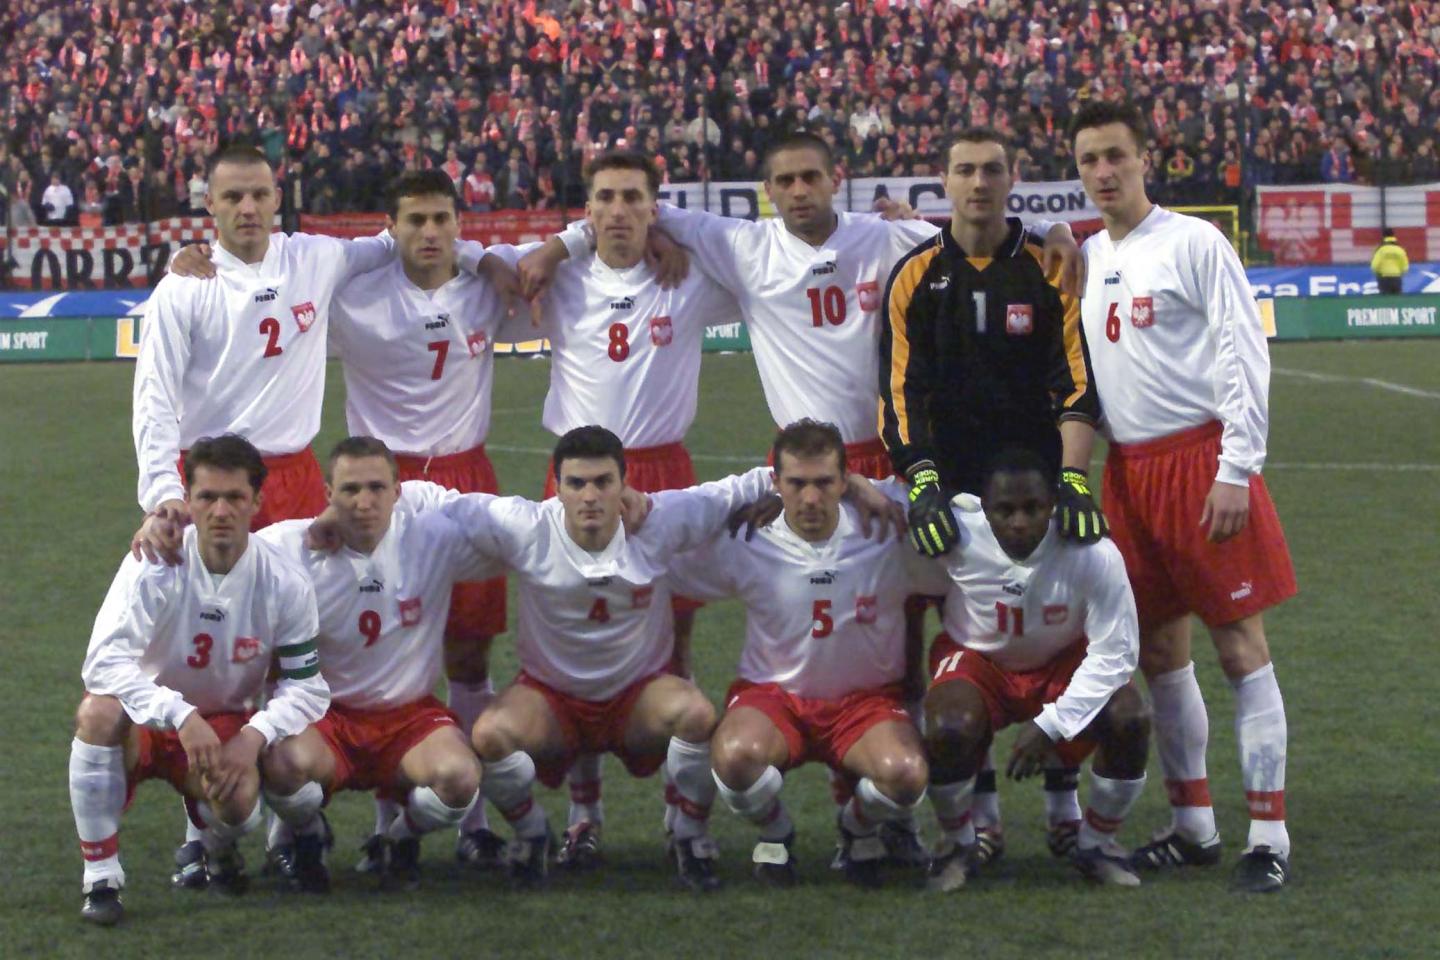 Reprezentacja Polski w białych koszulkach i czerwonych spodenkach pozuje do zdjęcia przed meczem z Armenią w Warszawie.